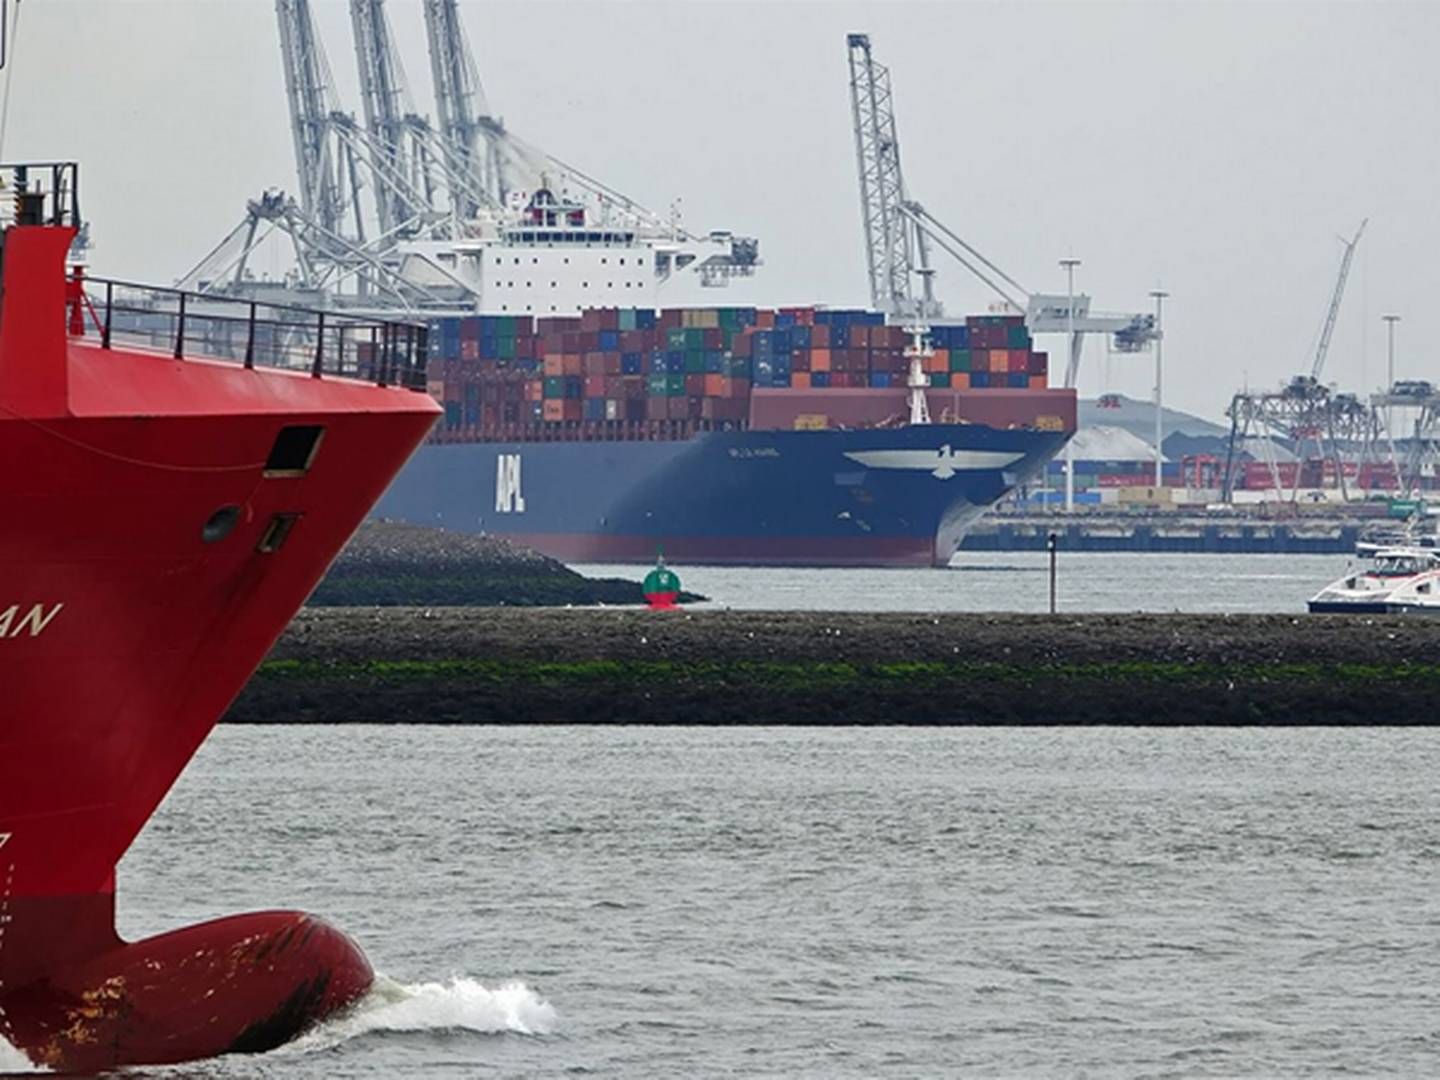 Arkivfoto. Ingen af skibene på billedet vedrører historien. | Foto: Port of Rotterdam/Kees Torn